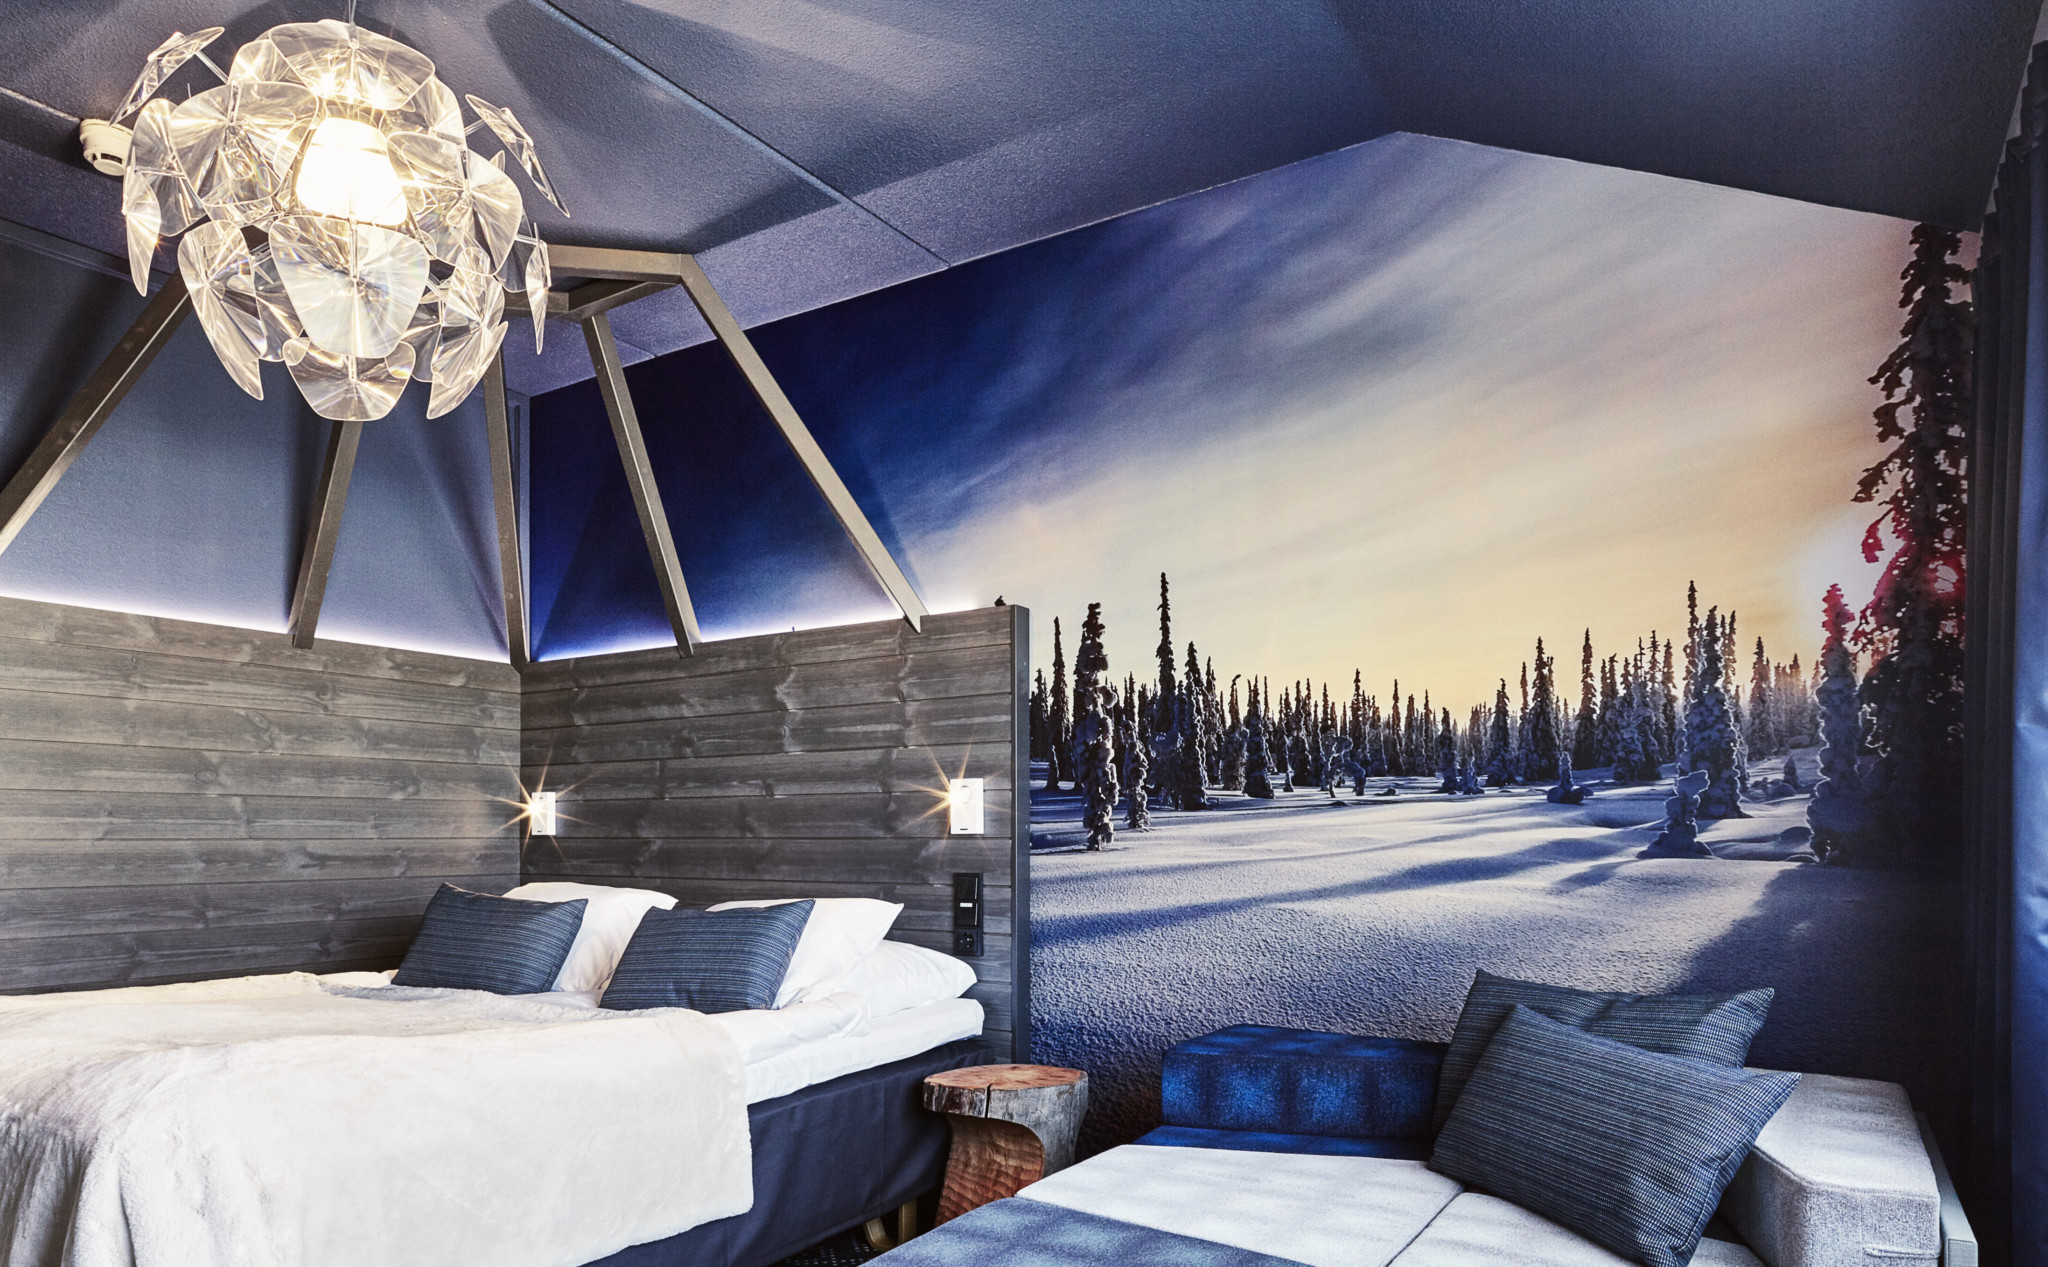 Arctic Circle Room in Original Sokos Hotel Vaakuna, Rovaniemi